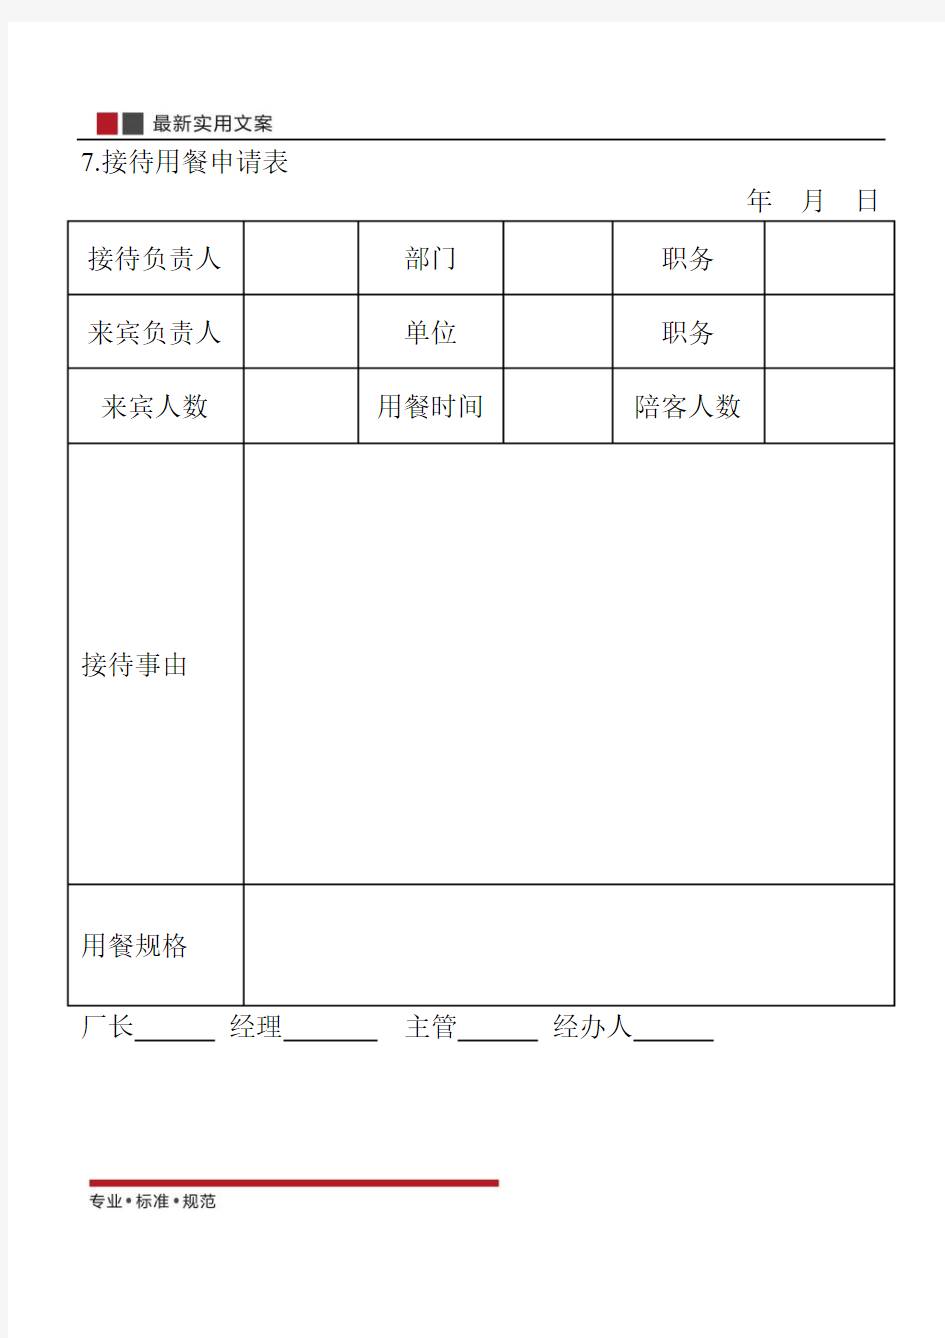 【范本】接待用餐申请表(标准模板)